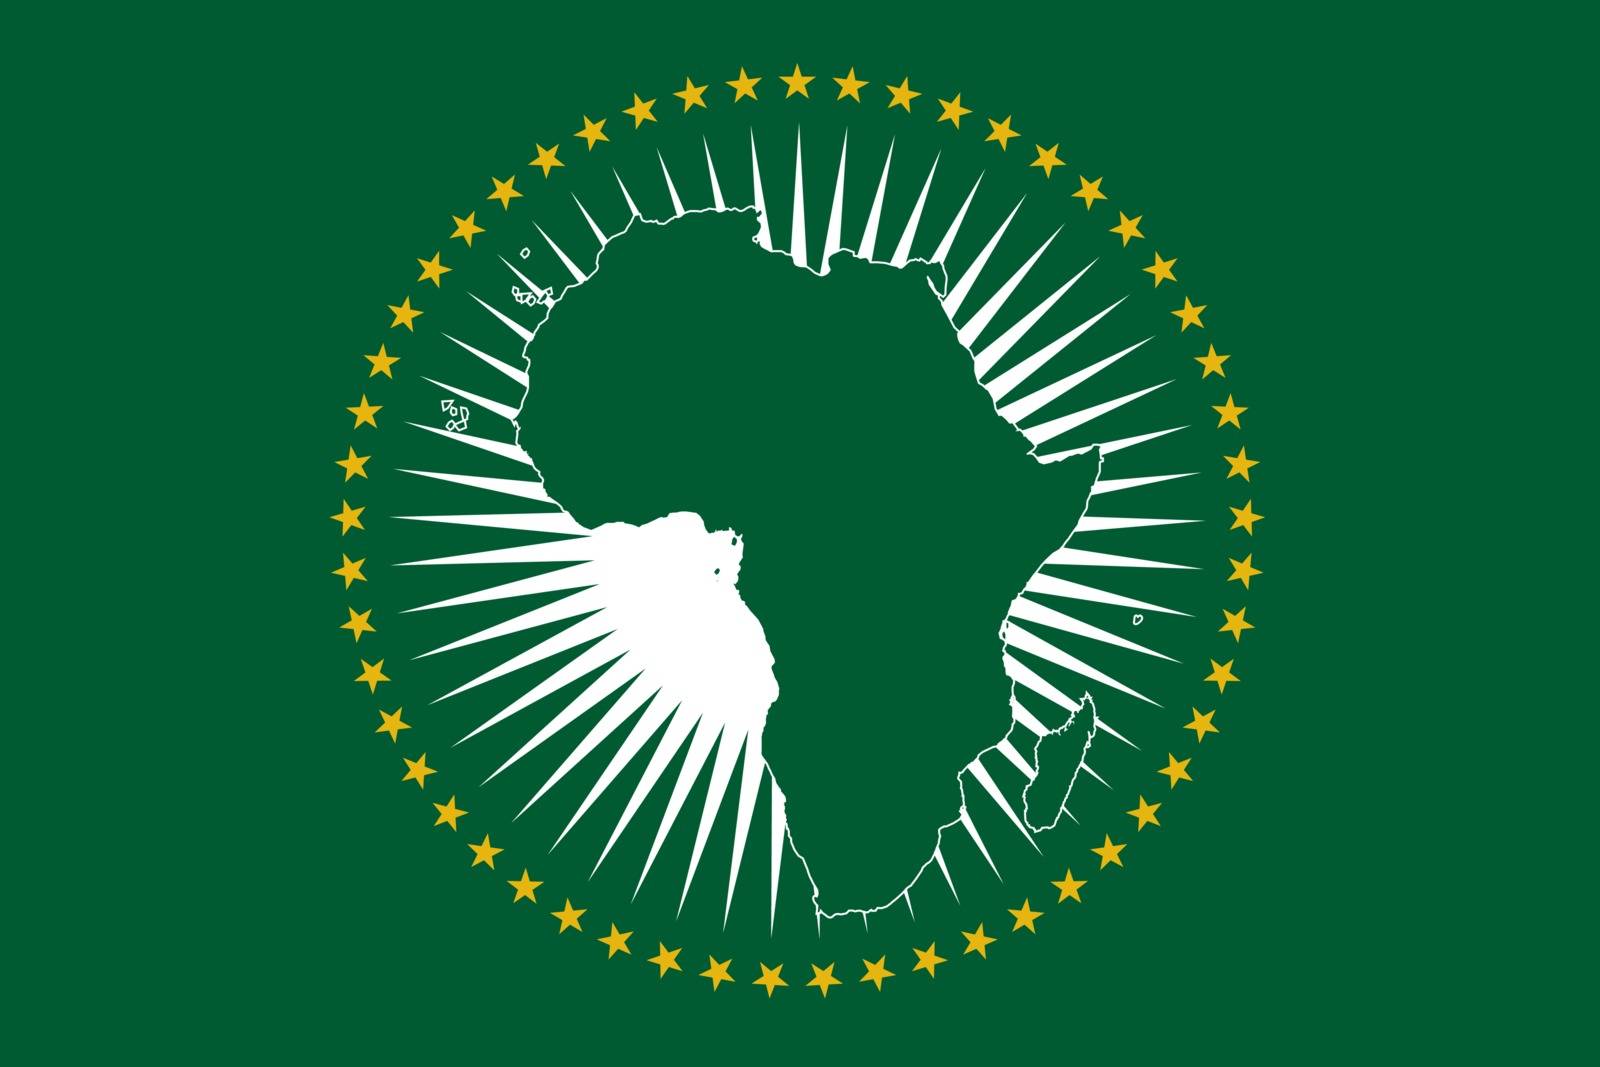 African Union Flag by DavidScar